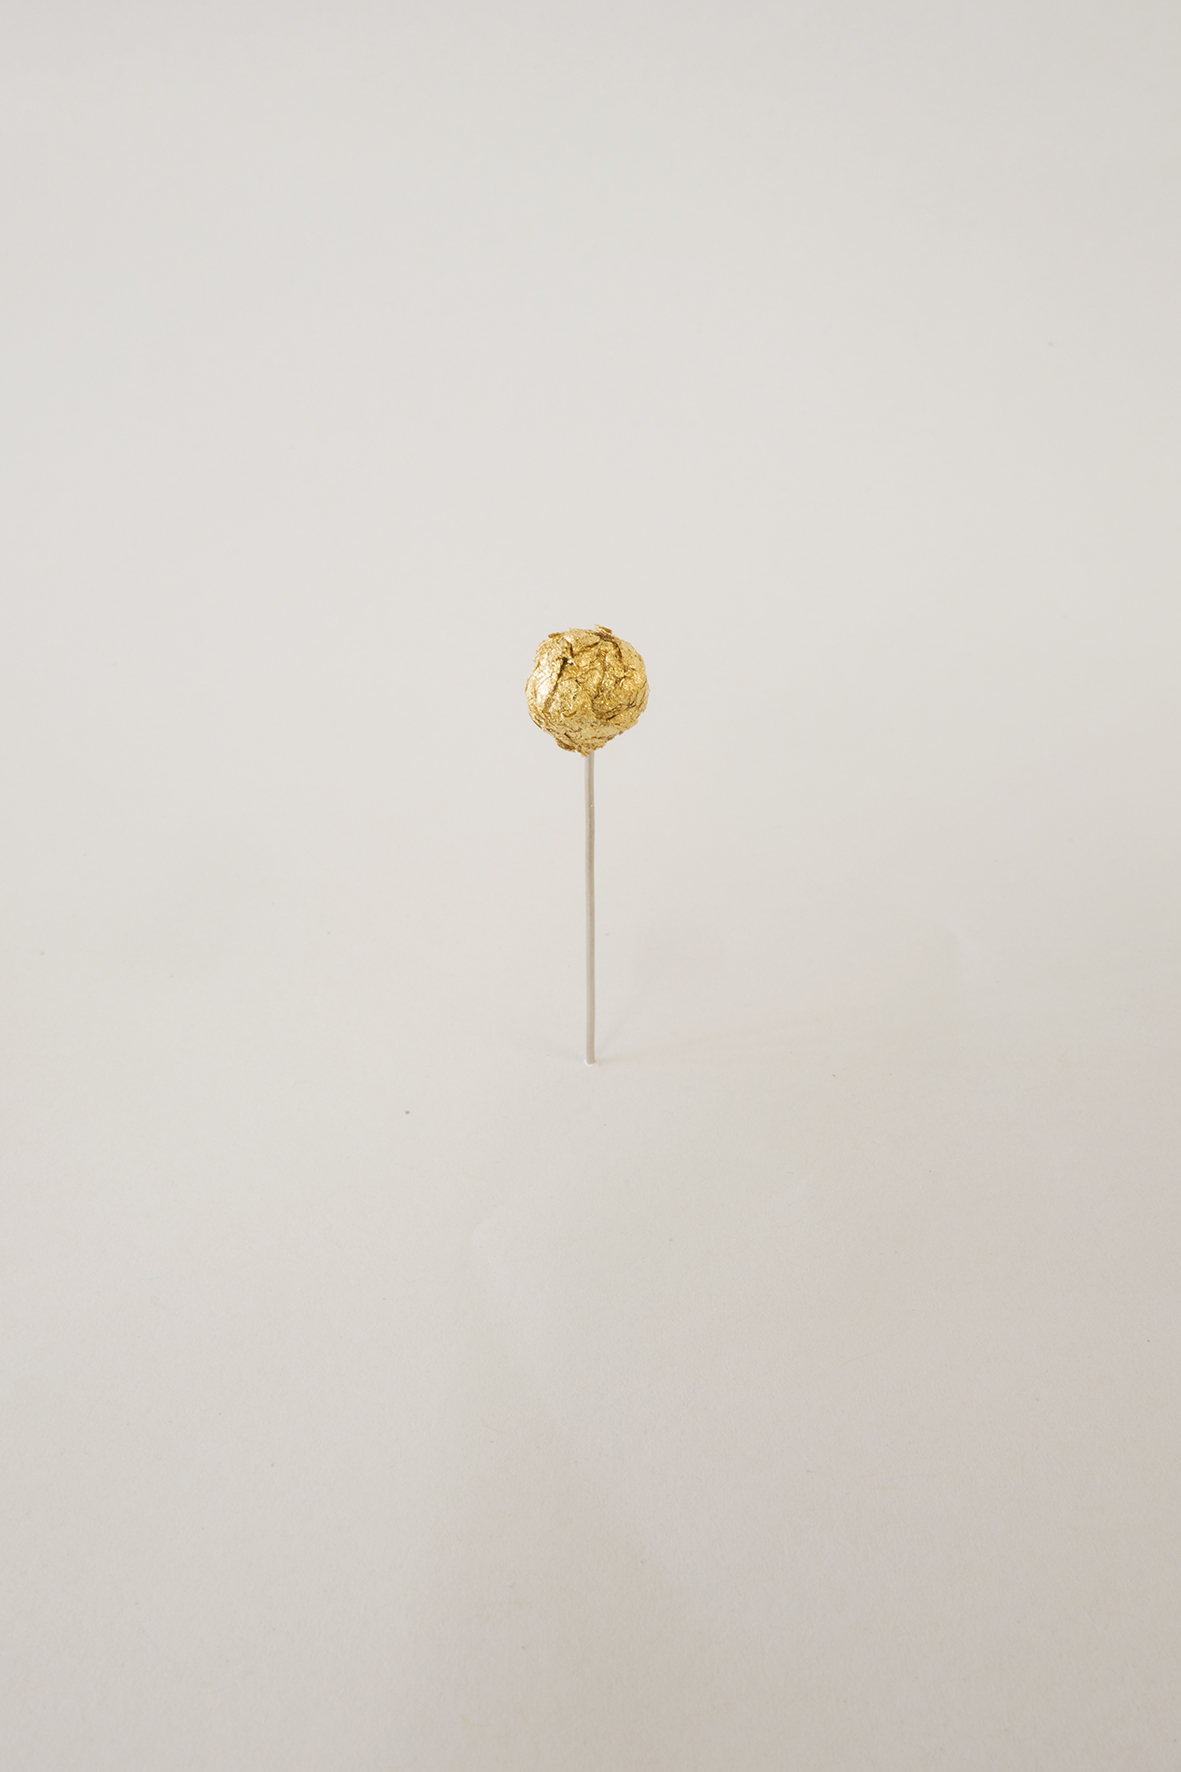  “Star” 2013, gold leaf, 6 x 1 x 1 cm  